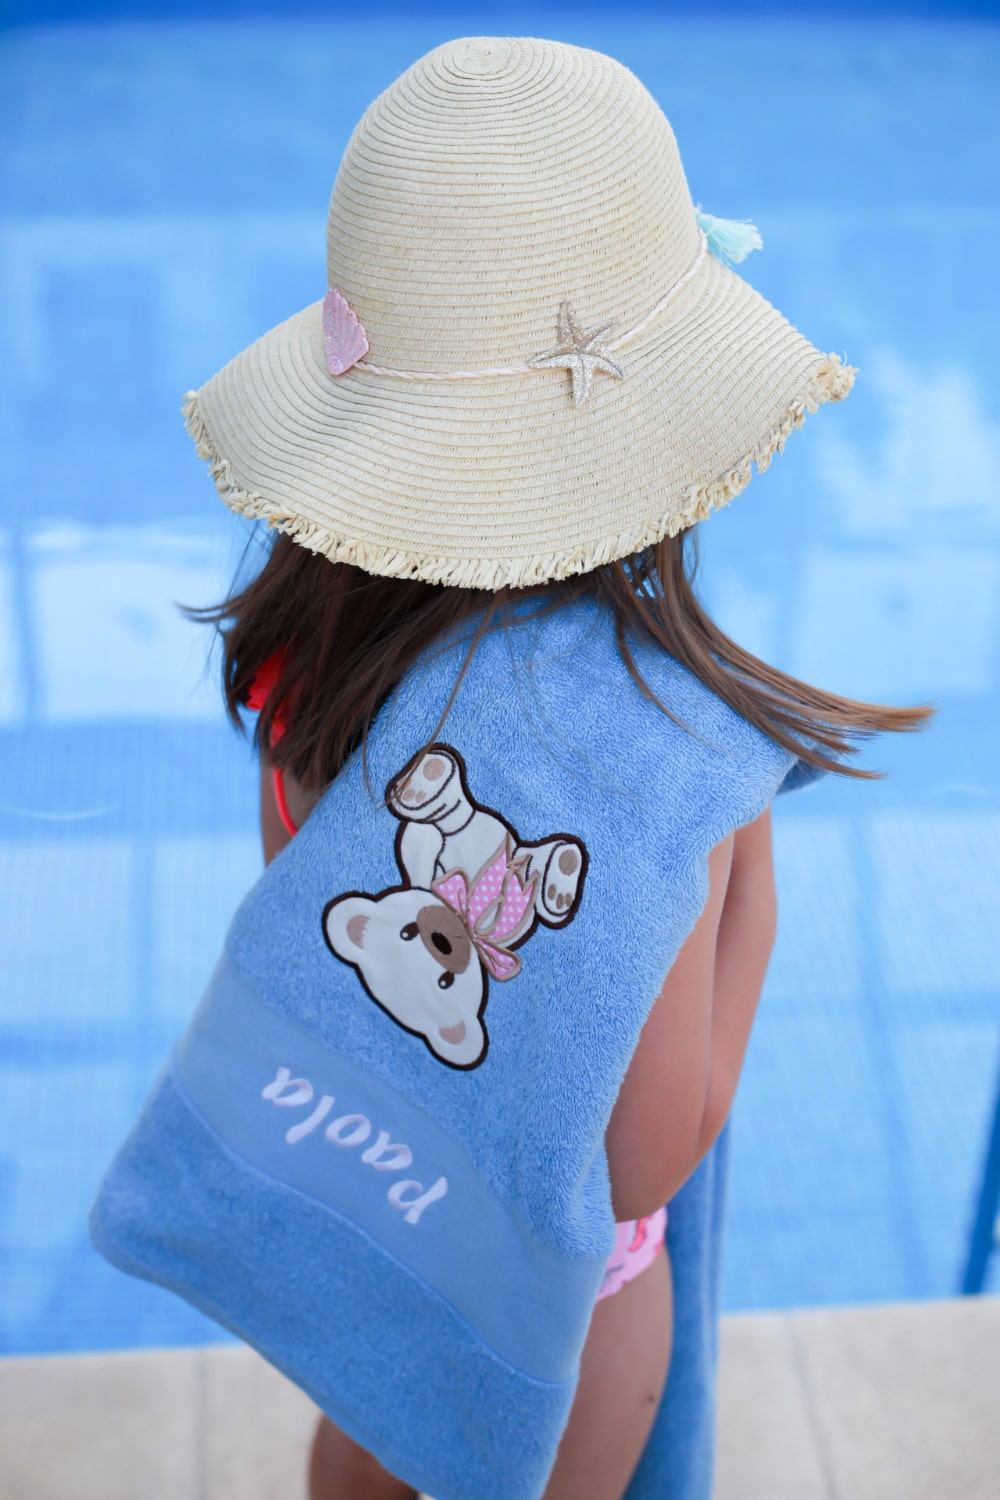 Het kleine meisje laat trots haar gepersonaliseerde handdoek zien, met een levendig ontwerp en haar naam erop.